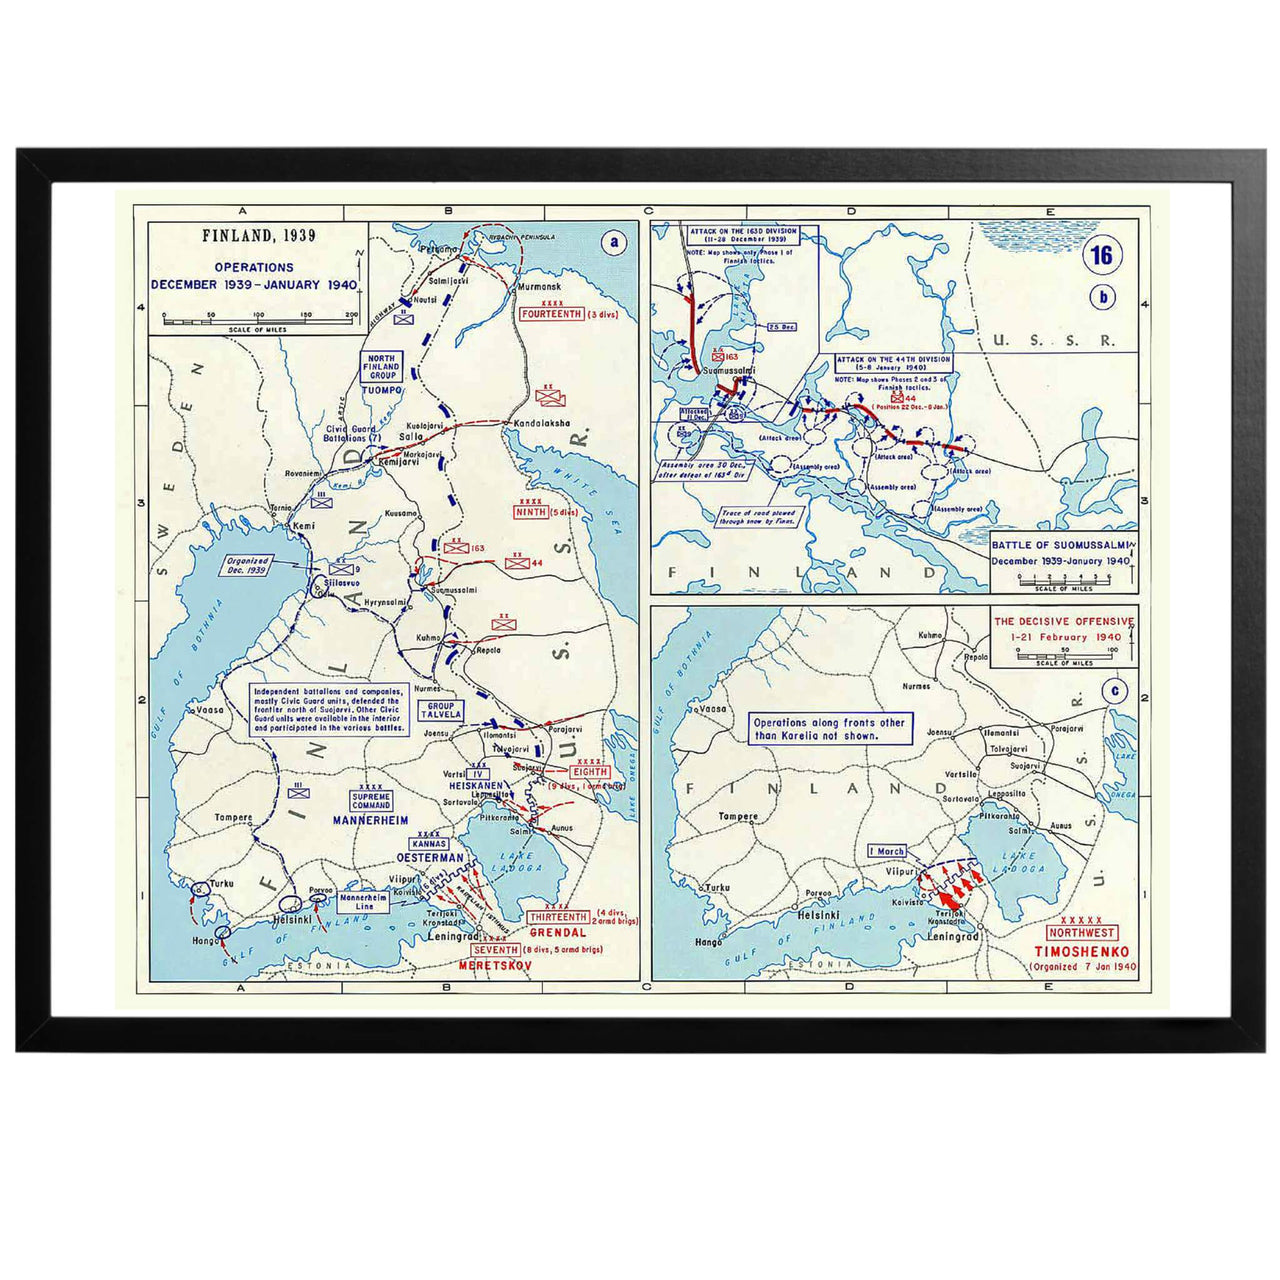 Finska Vinterkriget - Krigskarta från1940. Engelskspråkig karta som visar Sovjets anfall mot Finland under tiden december 1939 - januari 1940. Både finska och sovjetiska divisioner är angivna.